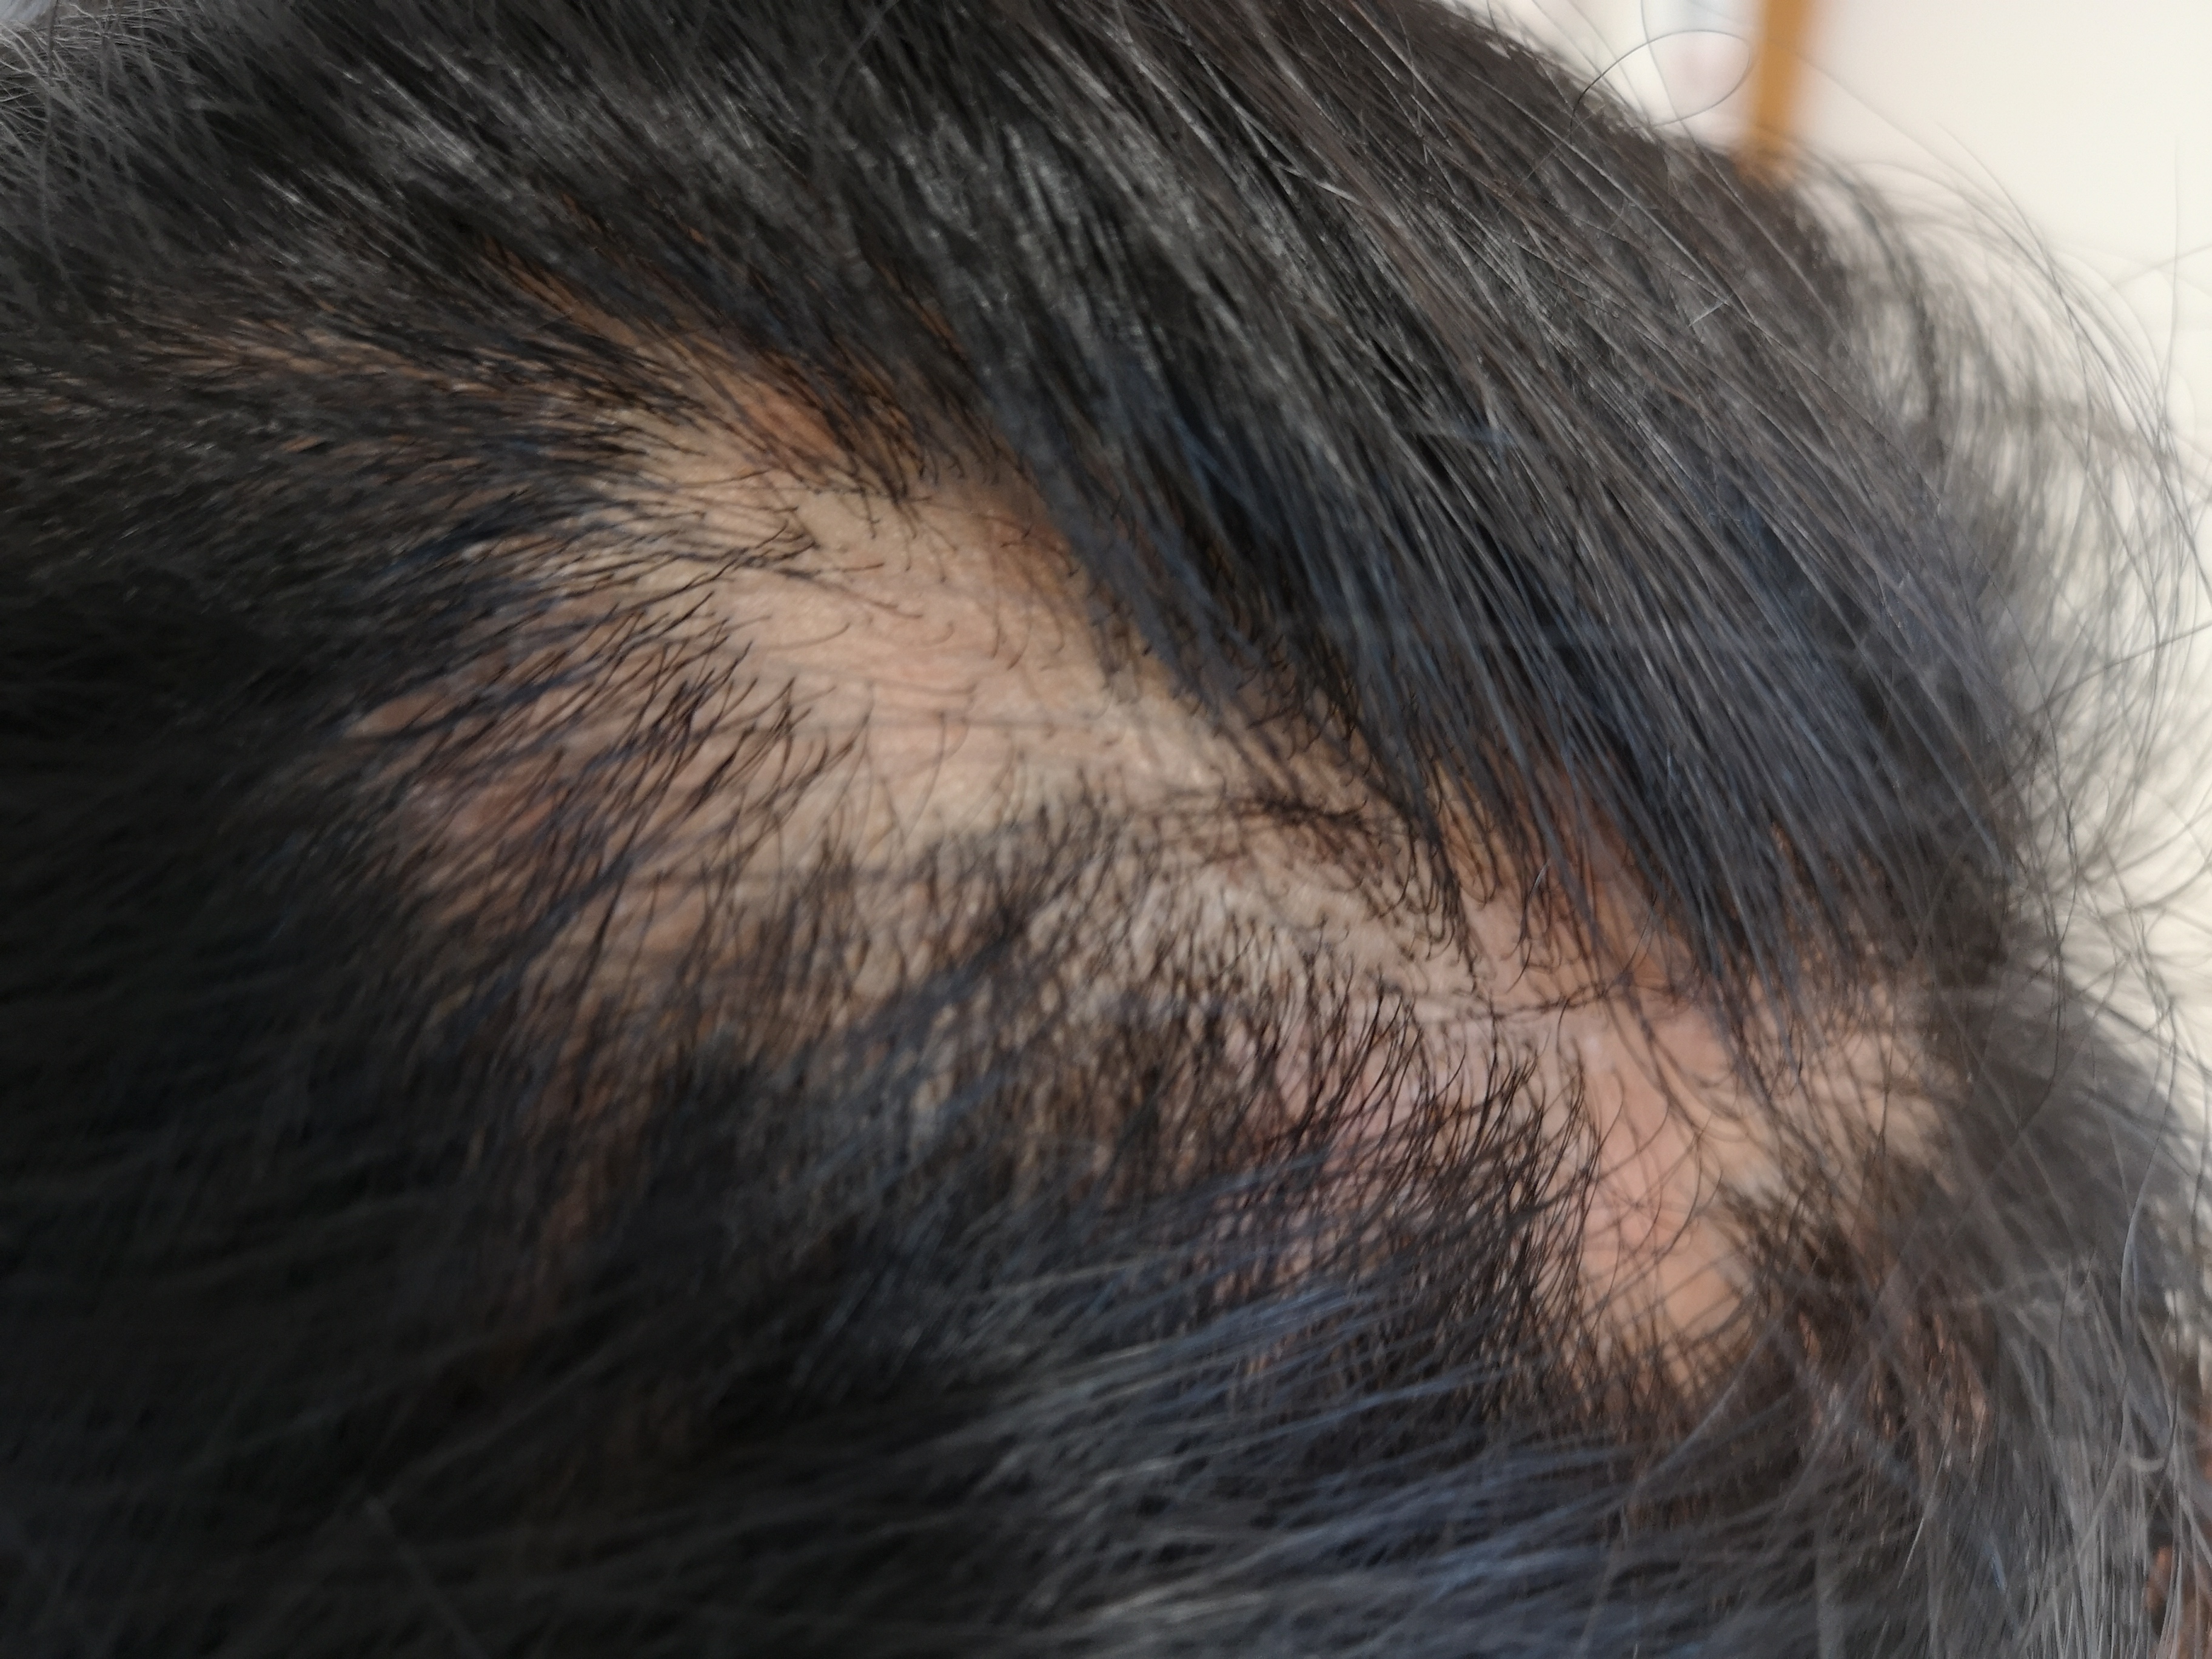 休止期脱发也很常见,尤其是产后及营养状况不佳等容易导致